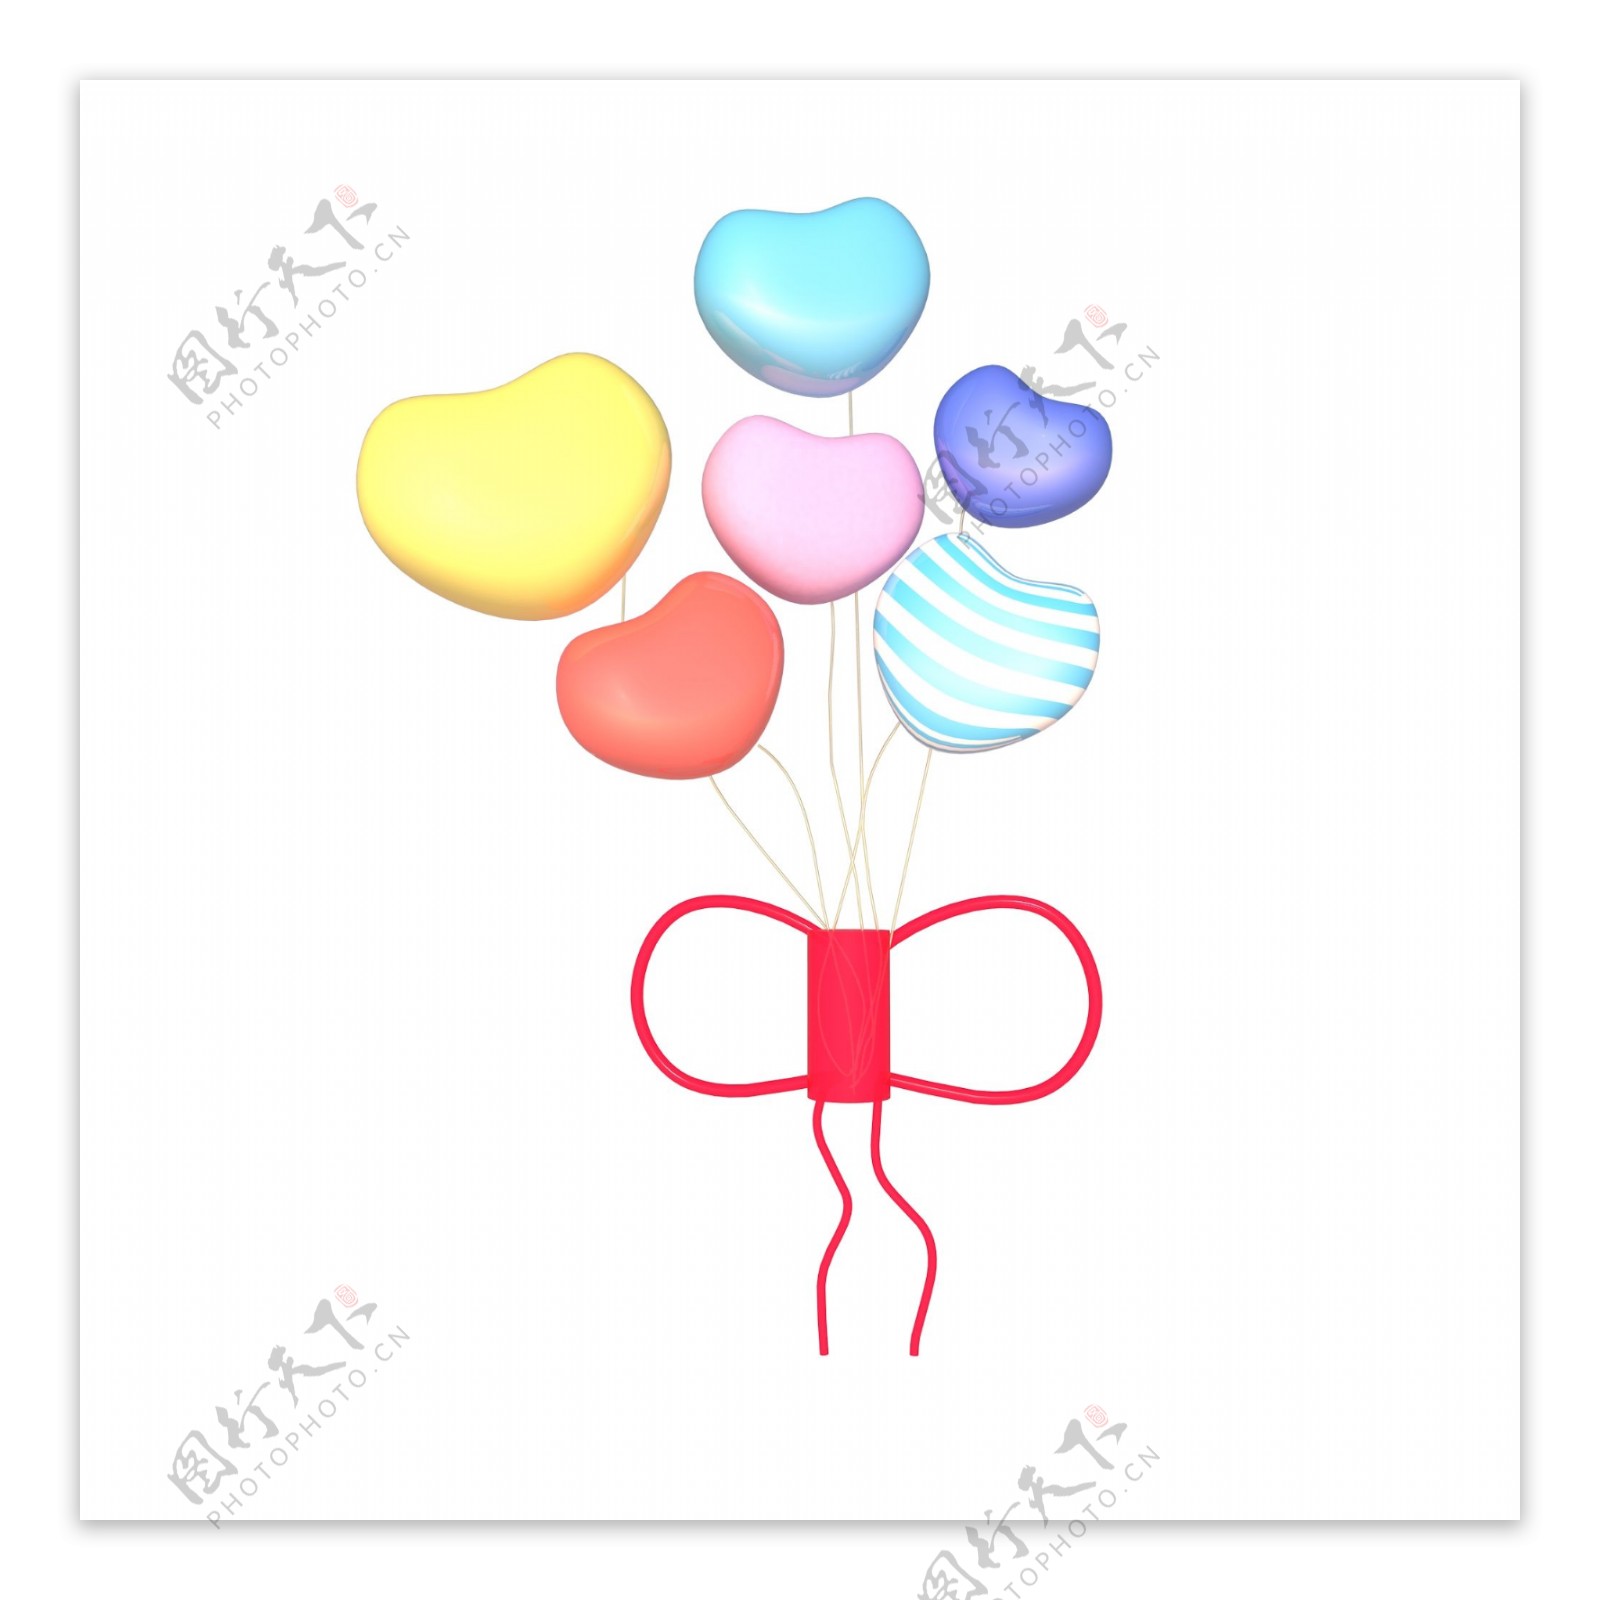 C4D立体彩色气球